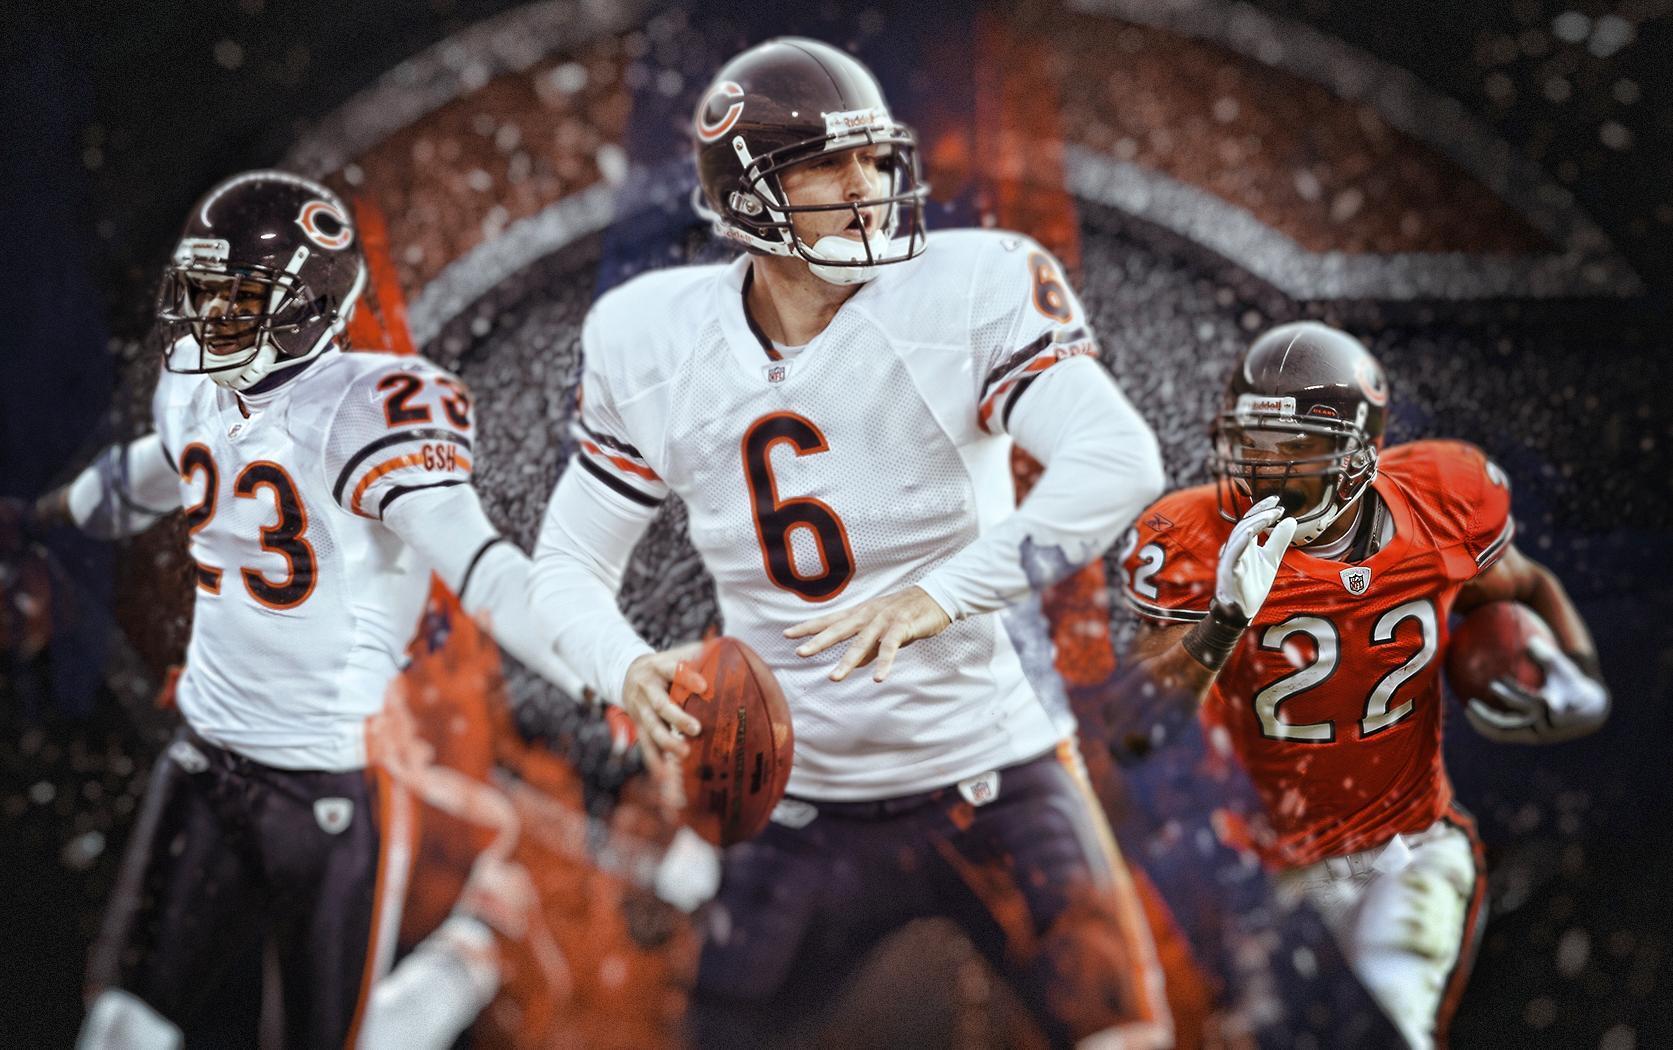 Free Chicago Bears desktop wallpaper. Chicago Bears wallpaper